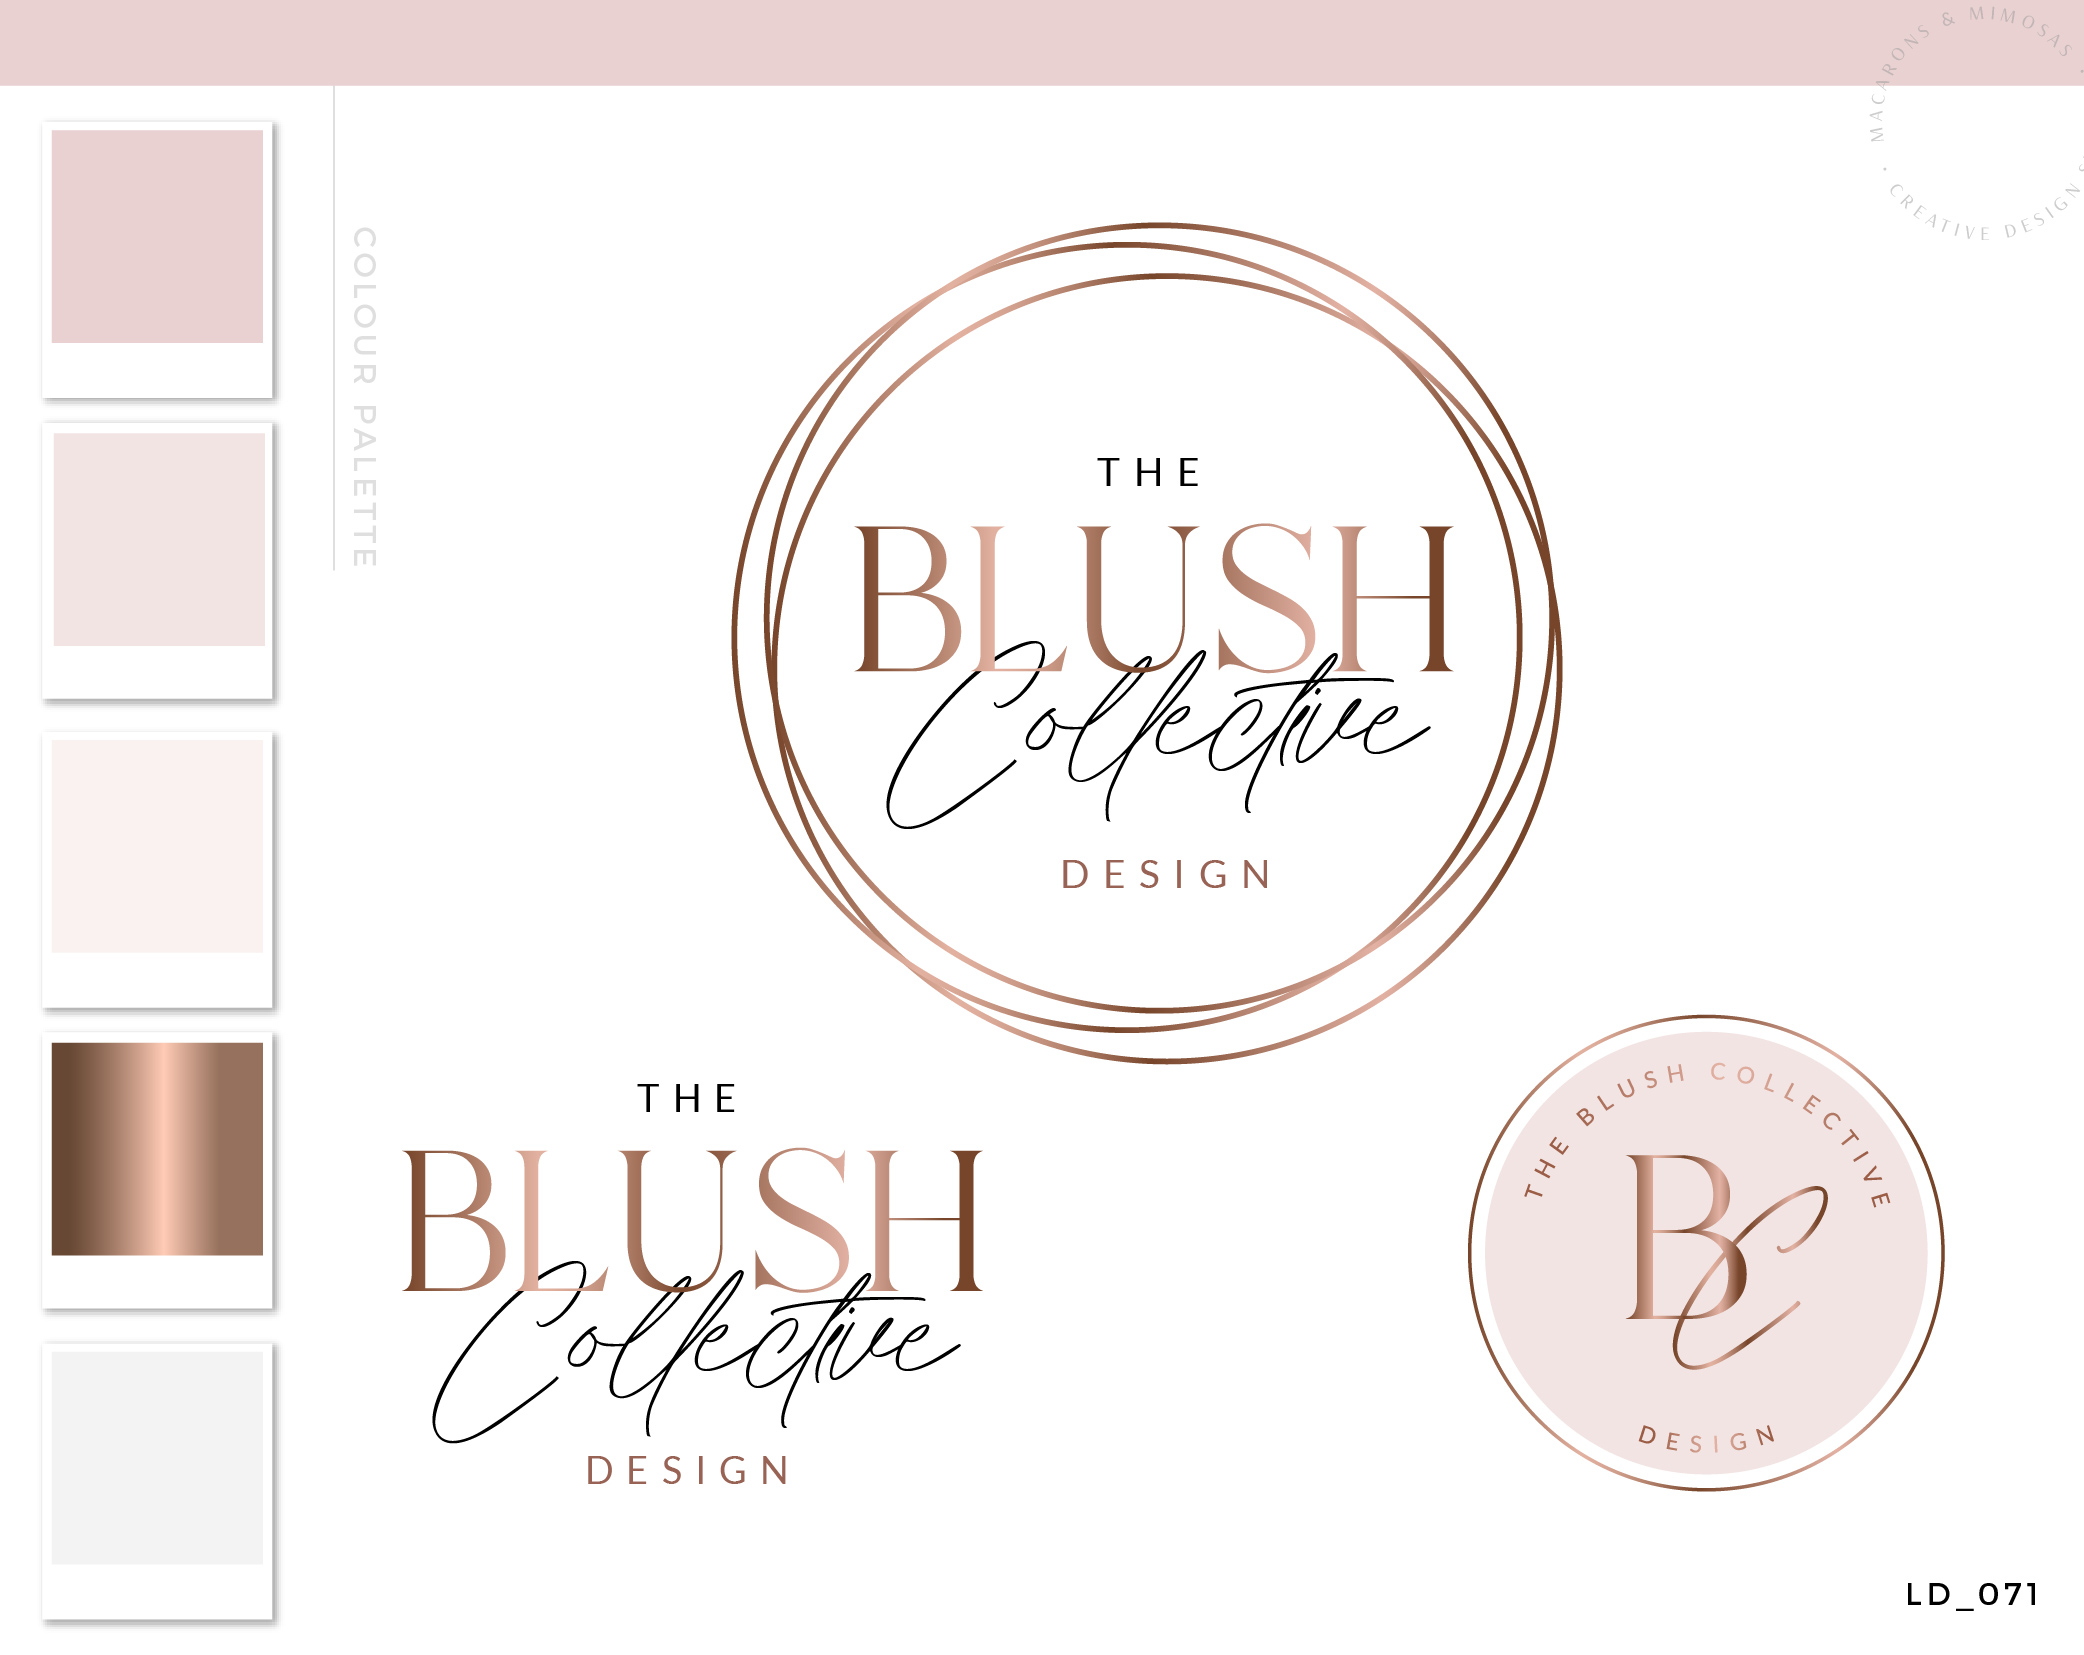 Logos & Branding Kit, Rose Gold Photography Logo Design, Wedding Boutique Watermark Blog Set, Custom Circle Heart Logo Package